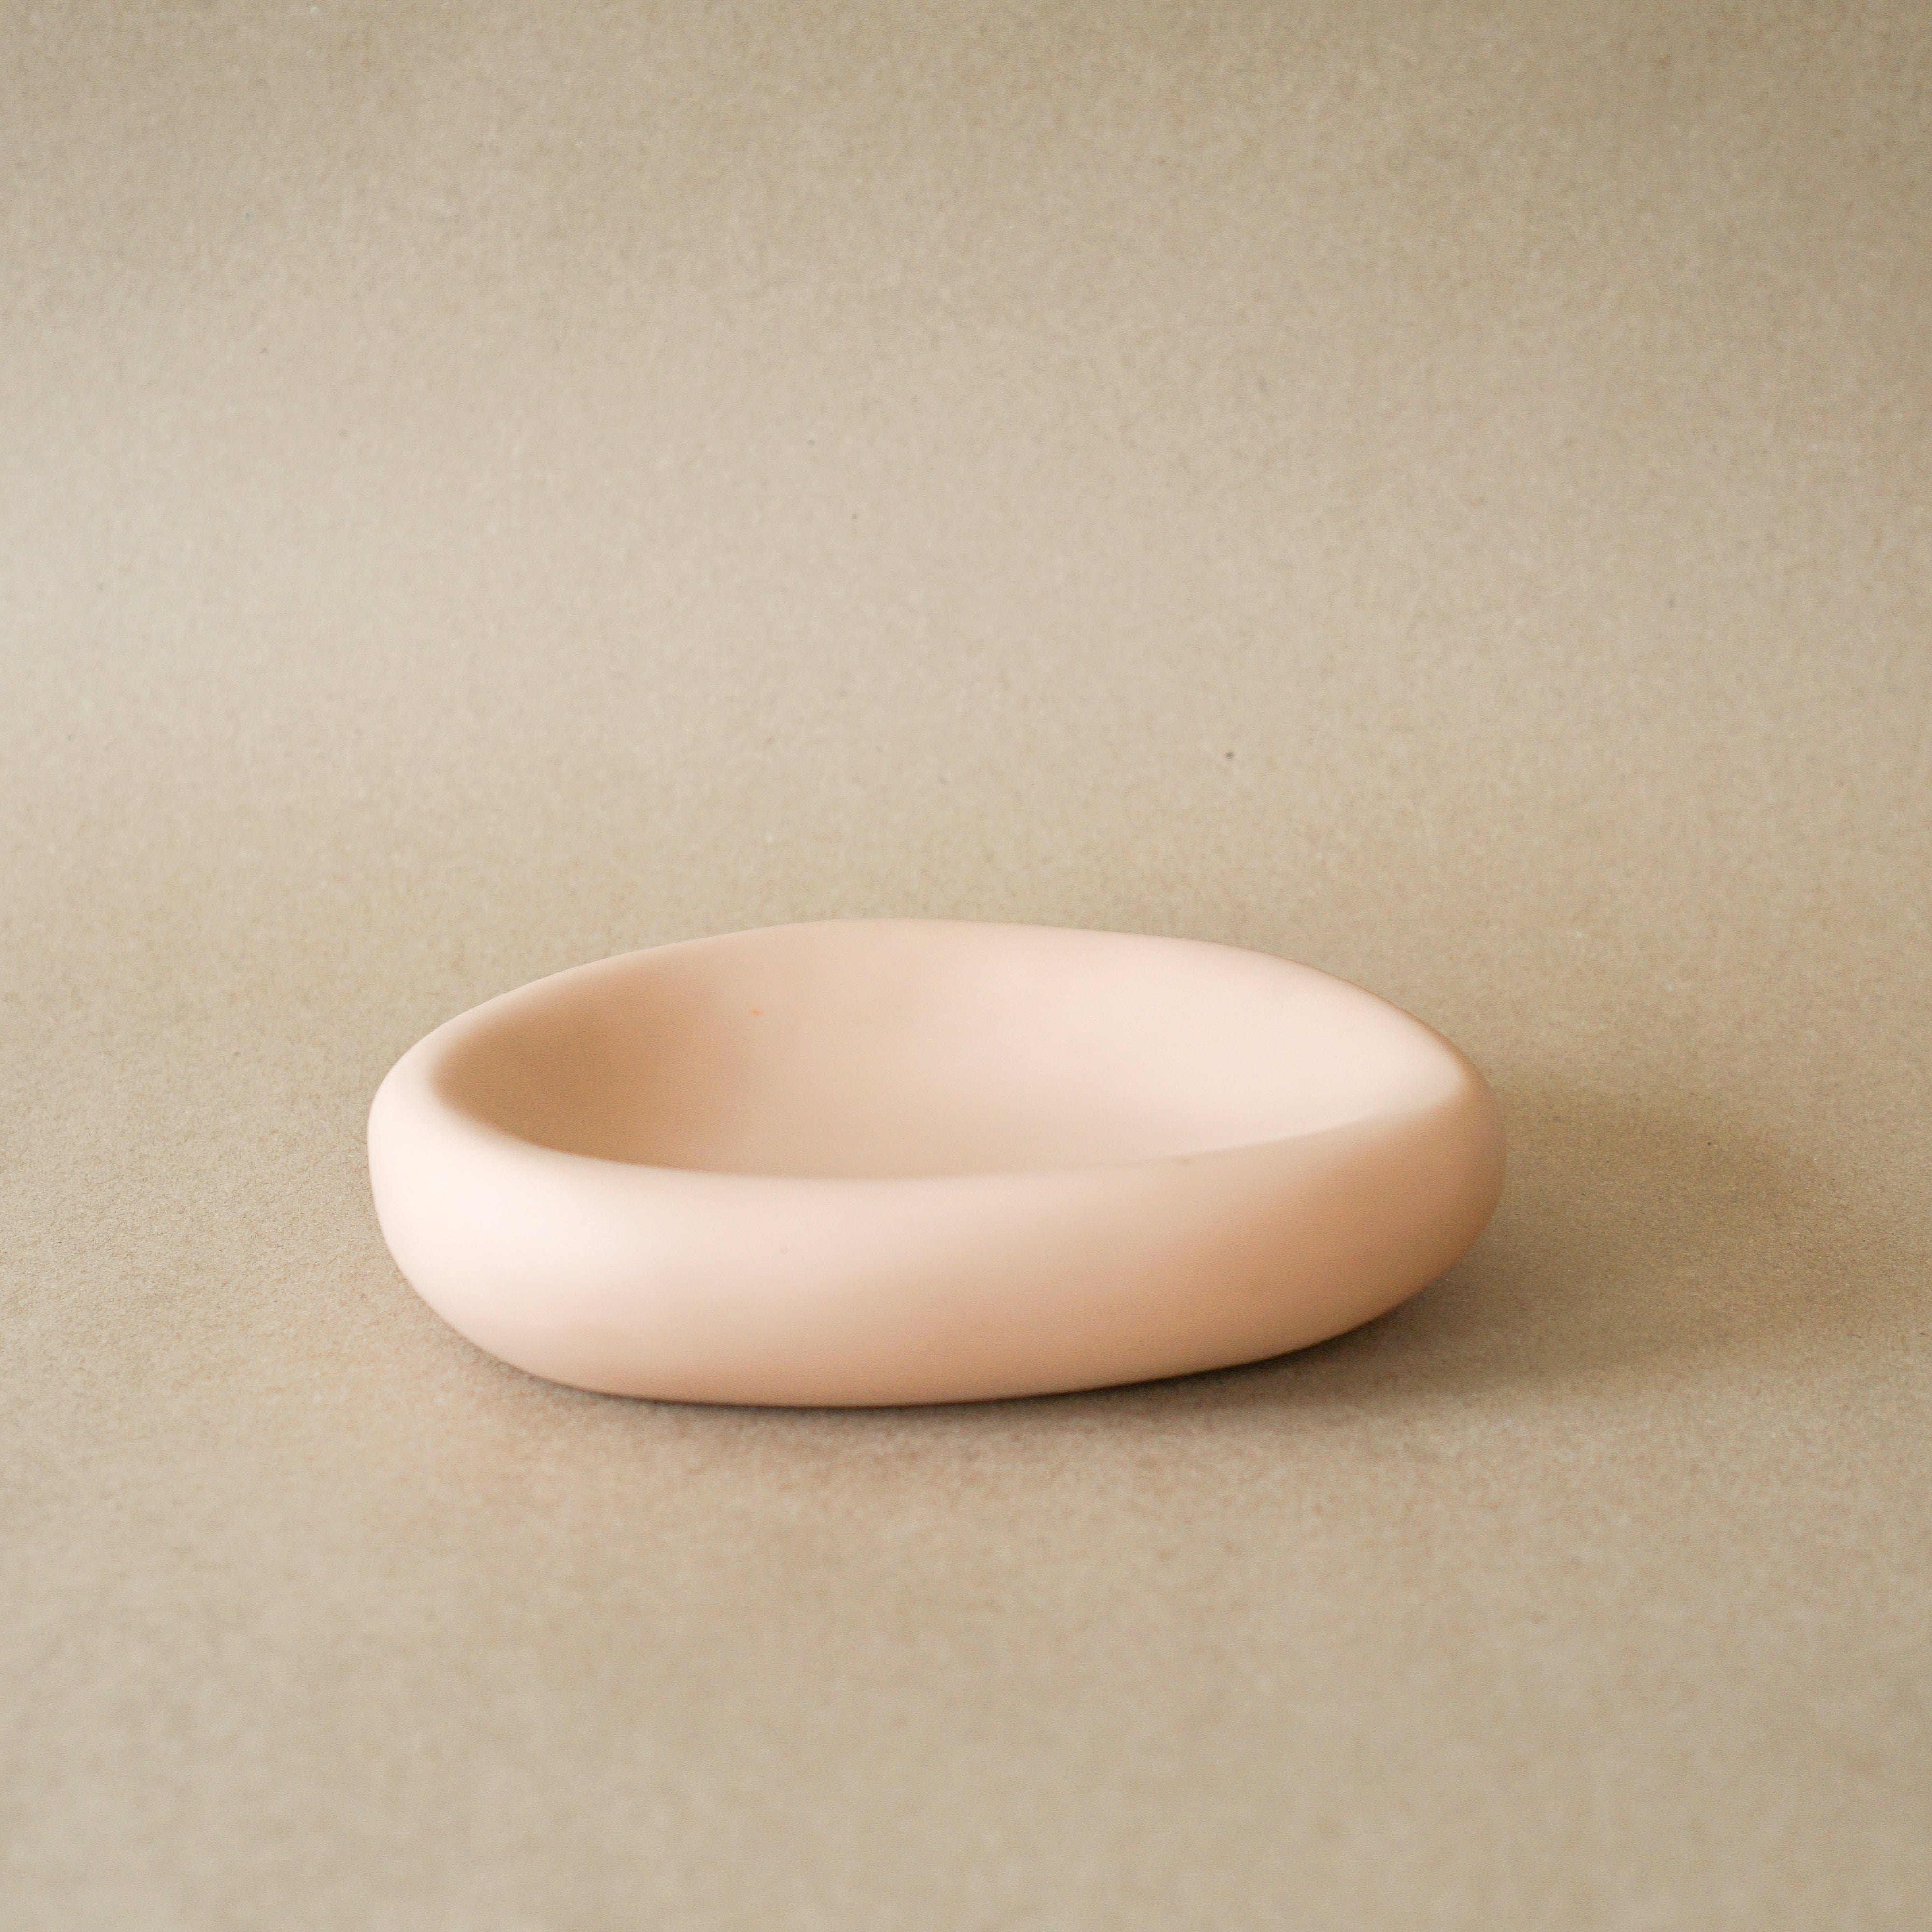 TINA FREY Decor Nude / Medium Amoeba Bowl by Tina Frey